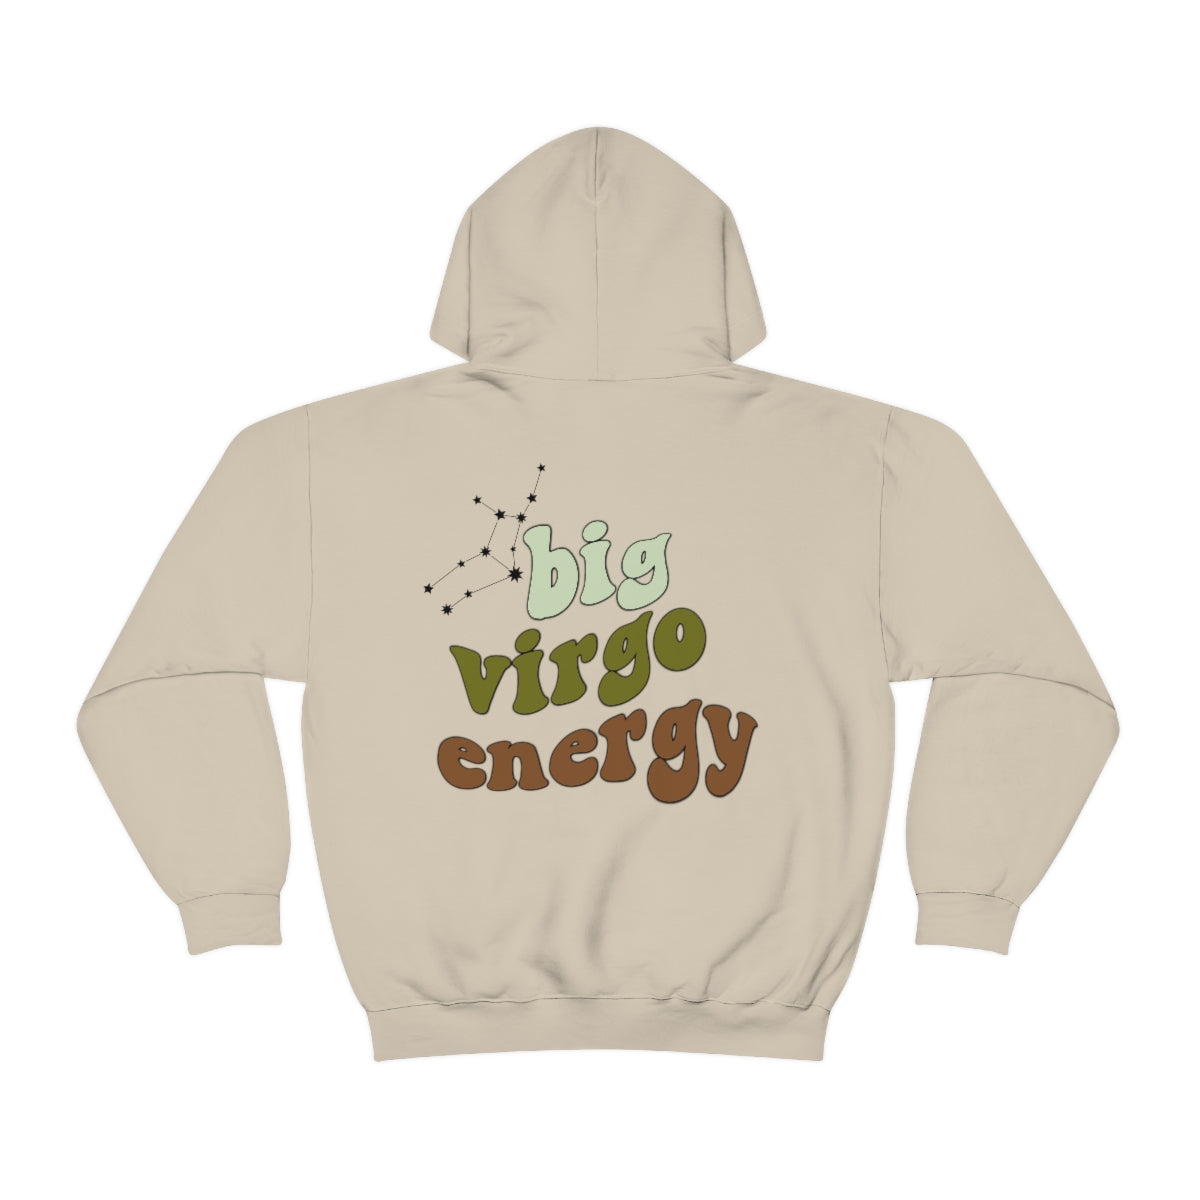 Big Virgo energy Hoodie,  Virgo Sweatshirt, Astrology lover gift, Zodiac sweatshirt, Xmas gift for Virgo , Astrology gift